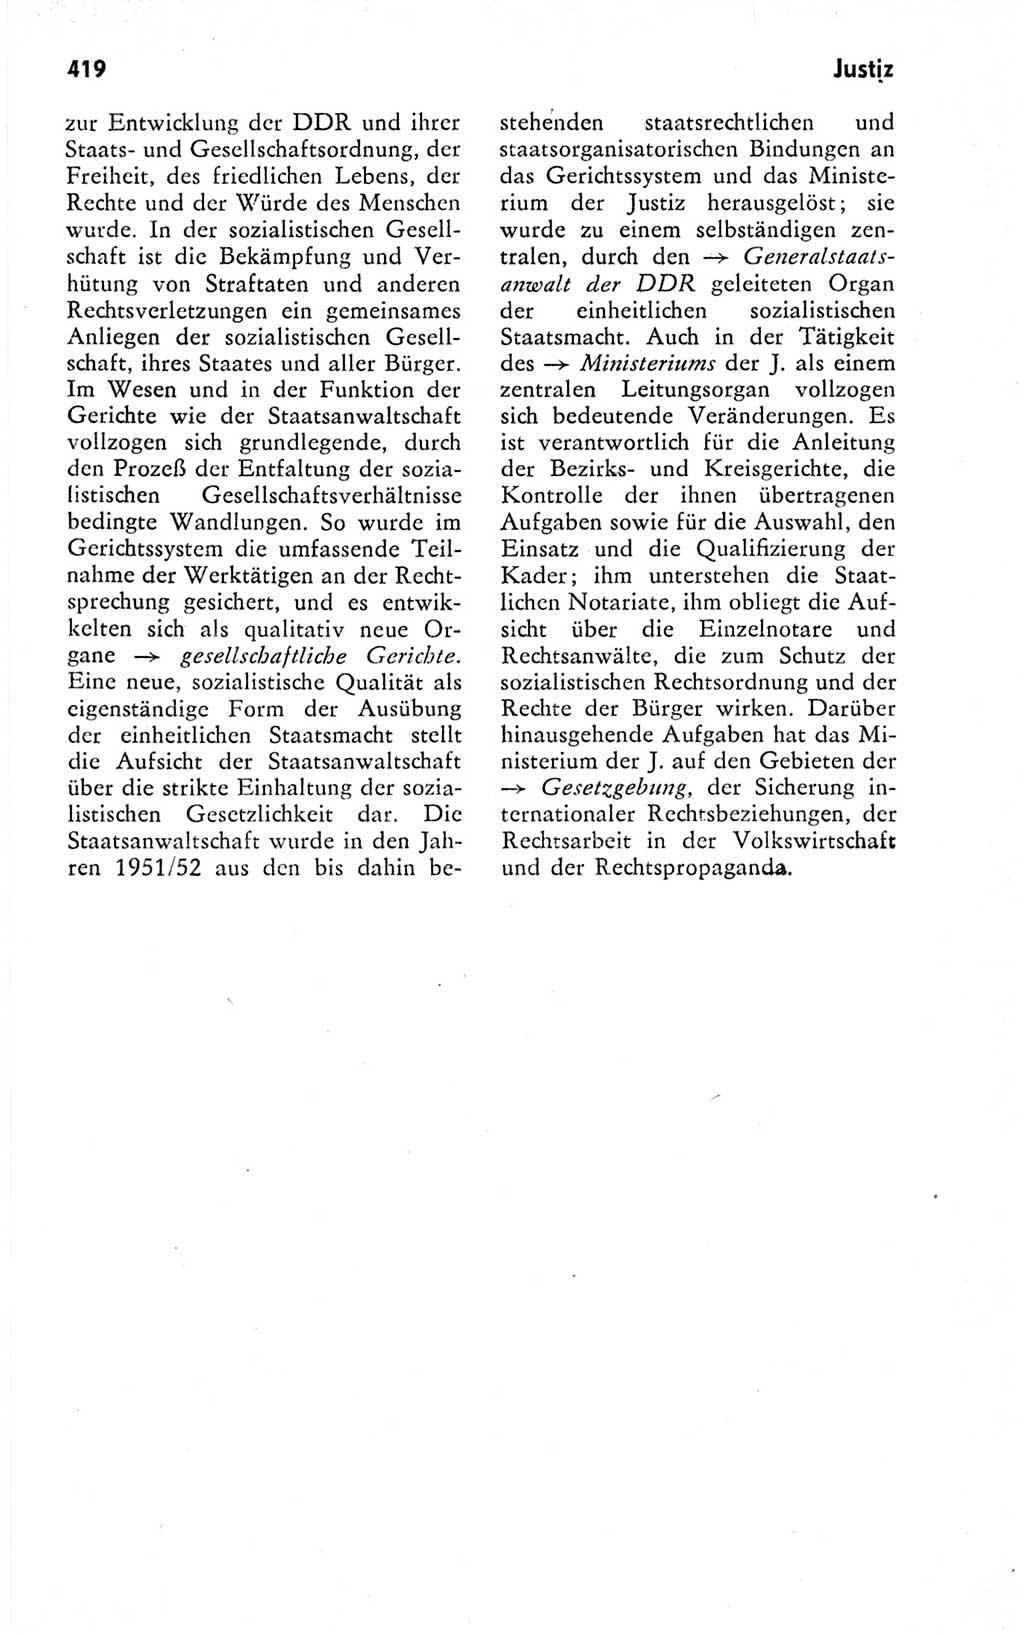 Kleines politisches Wörterbuch [Deutsche Demokratische Republik (DDR)] 1978, Seite 419 (Kl. pol. Wb. DDR 1978, S. 419)